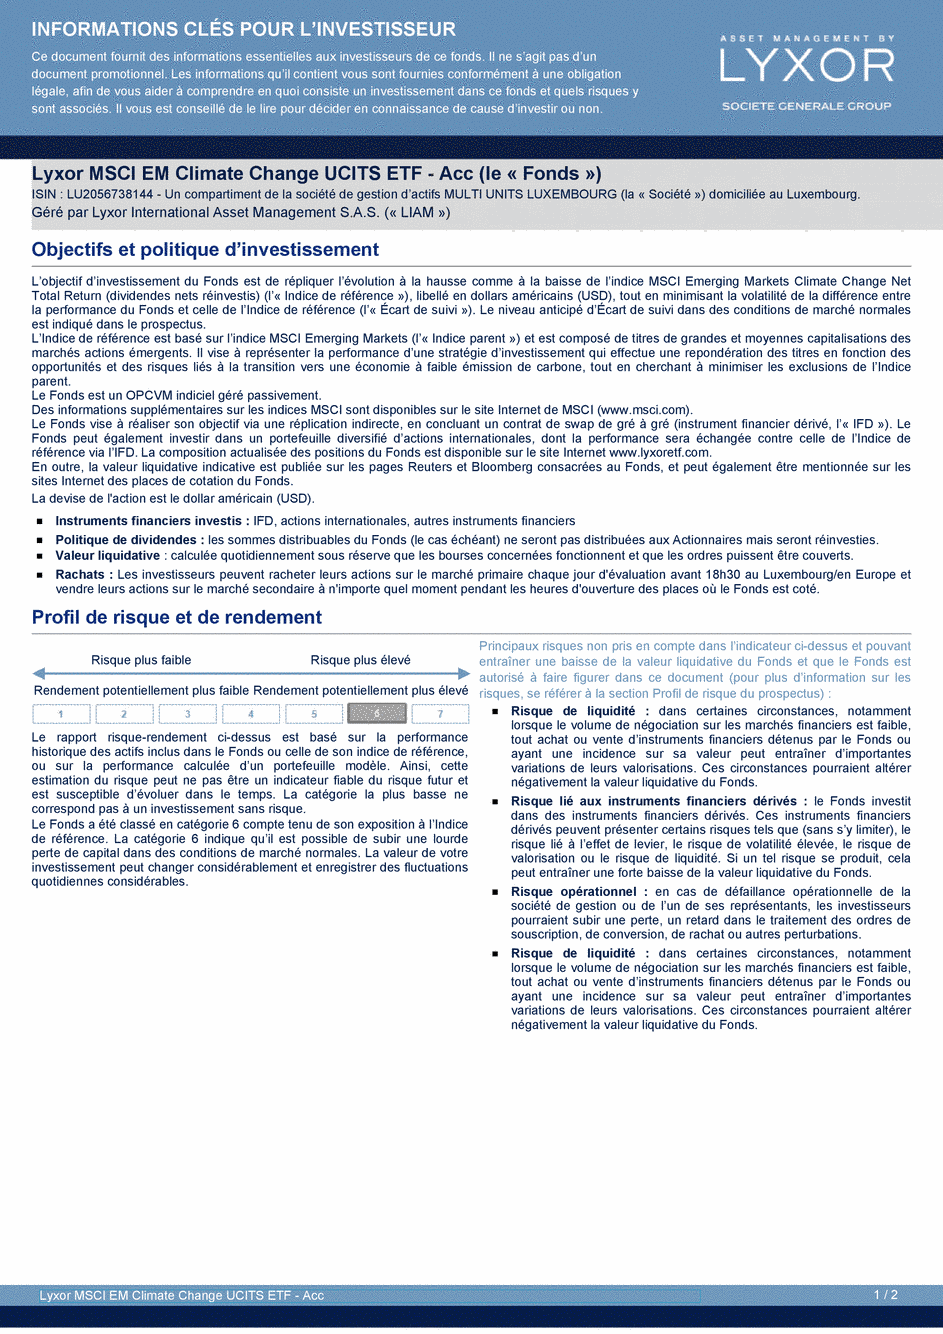 DICI Lyxor MSCI EM Climate Change UCITS ETF - Acc - 25/03/2020 - Français